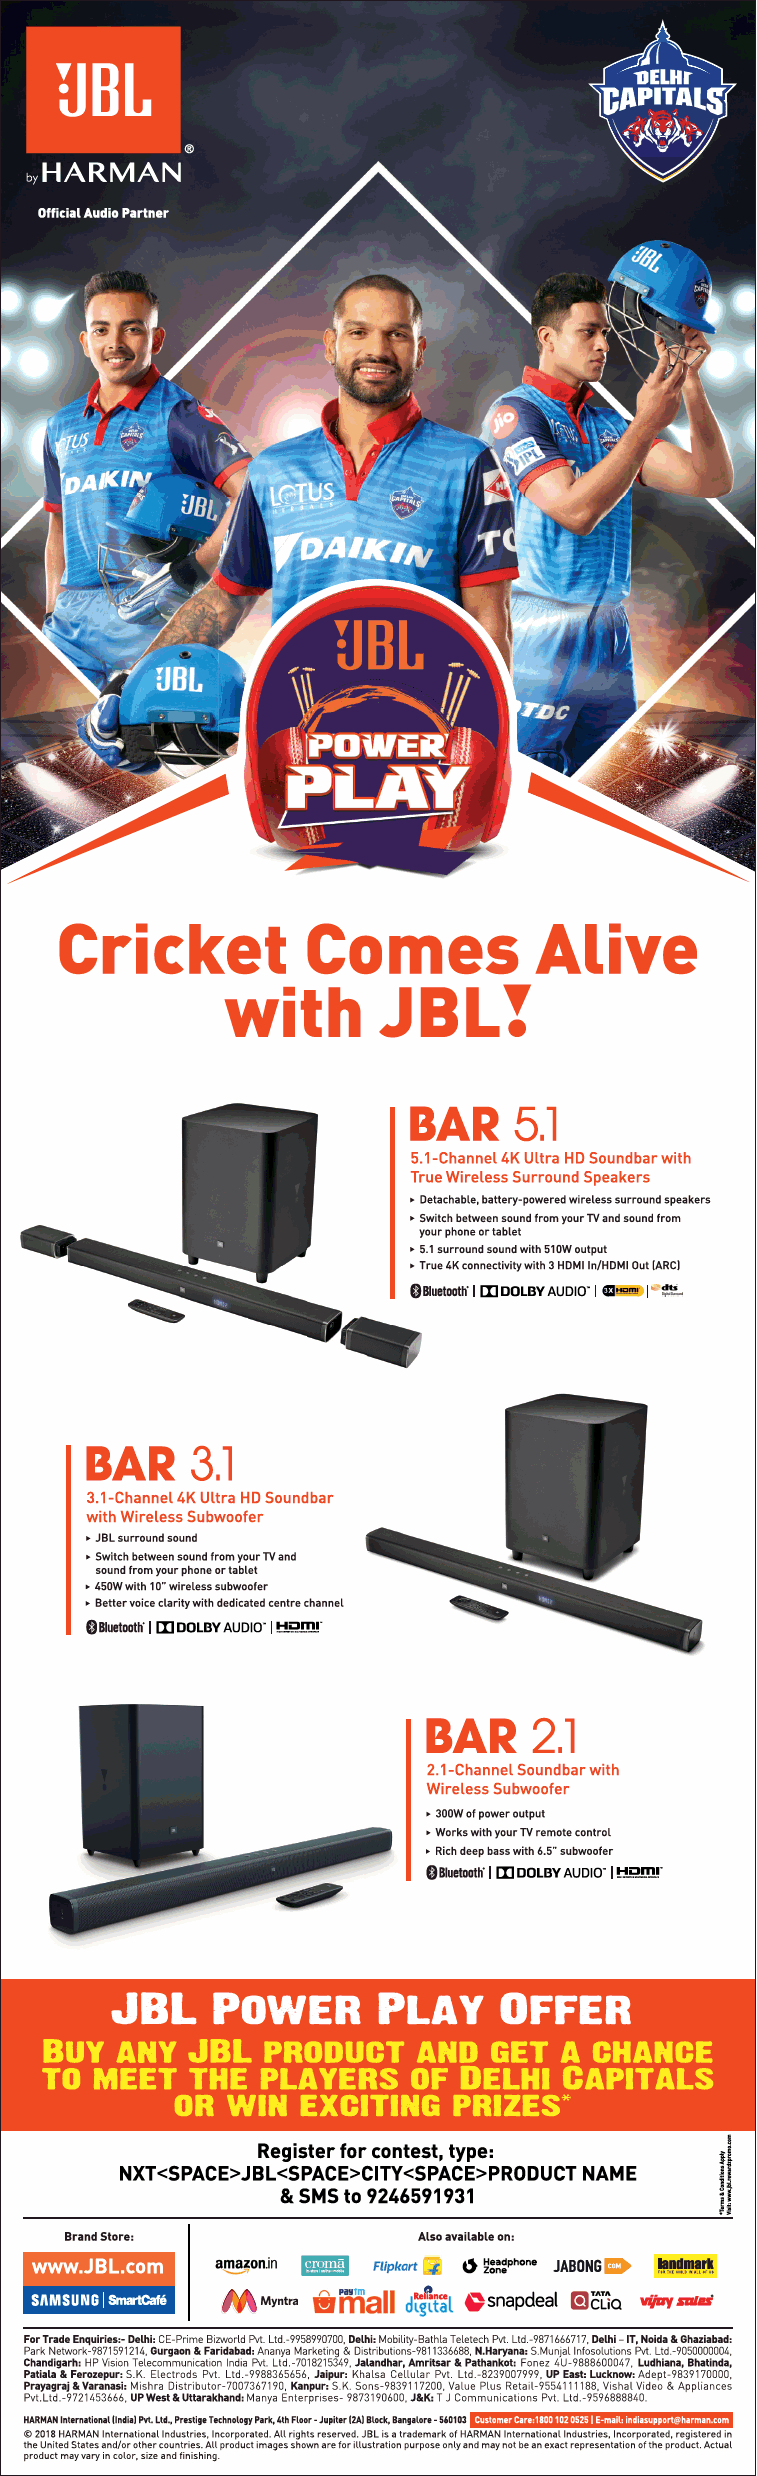 jbl-cricket-comes-alive-with-jbl-ad-delhi-times-26-03-2019.png